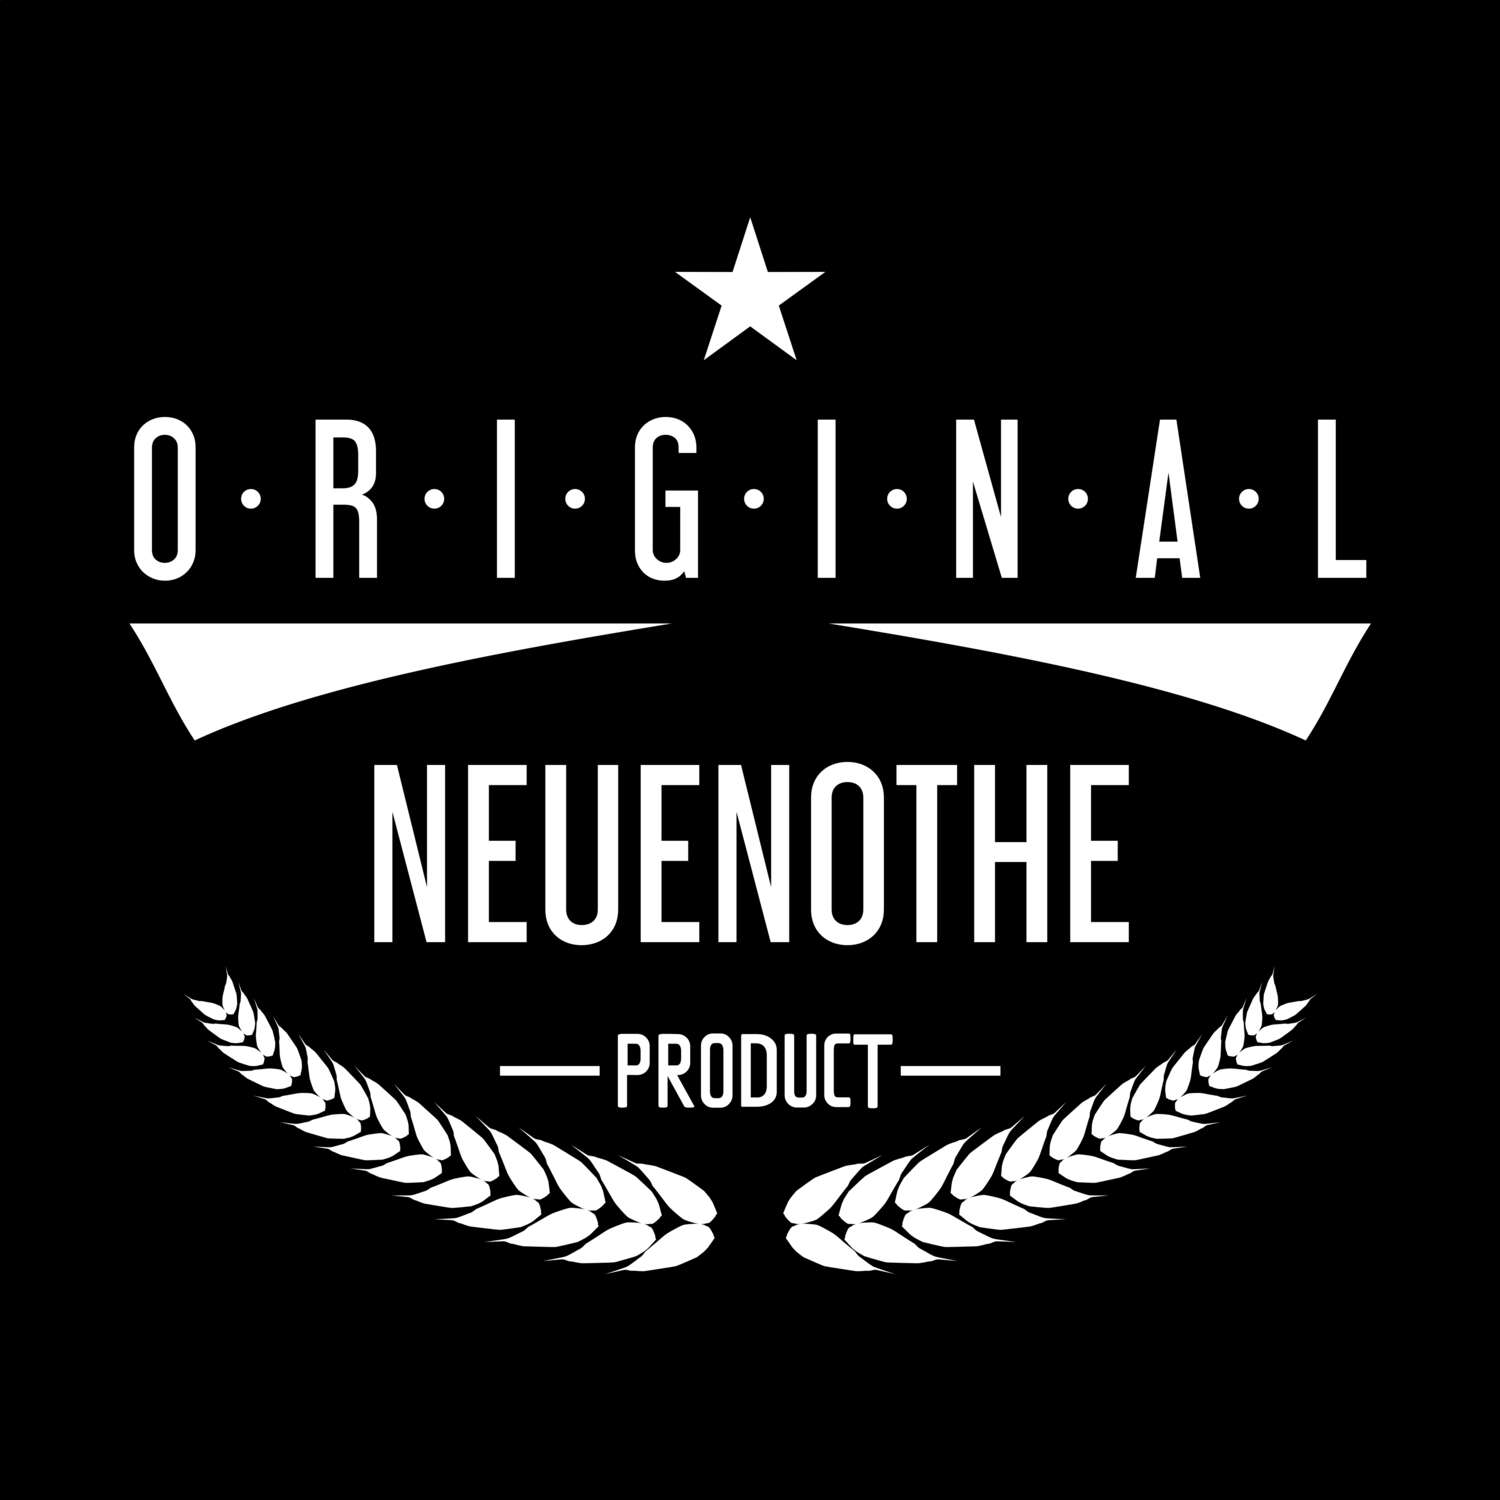 Neuenothe T-Shirt »Original Product«